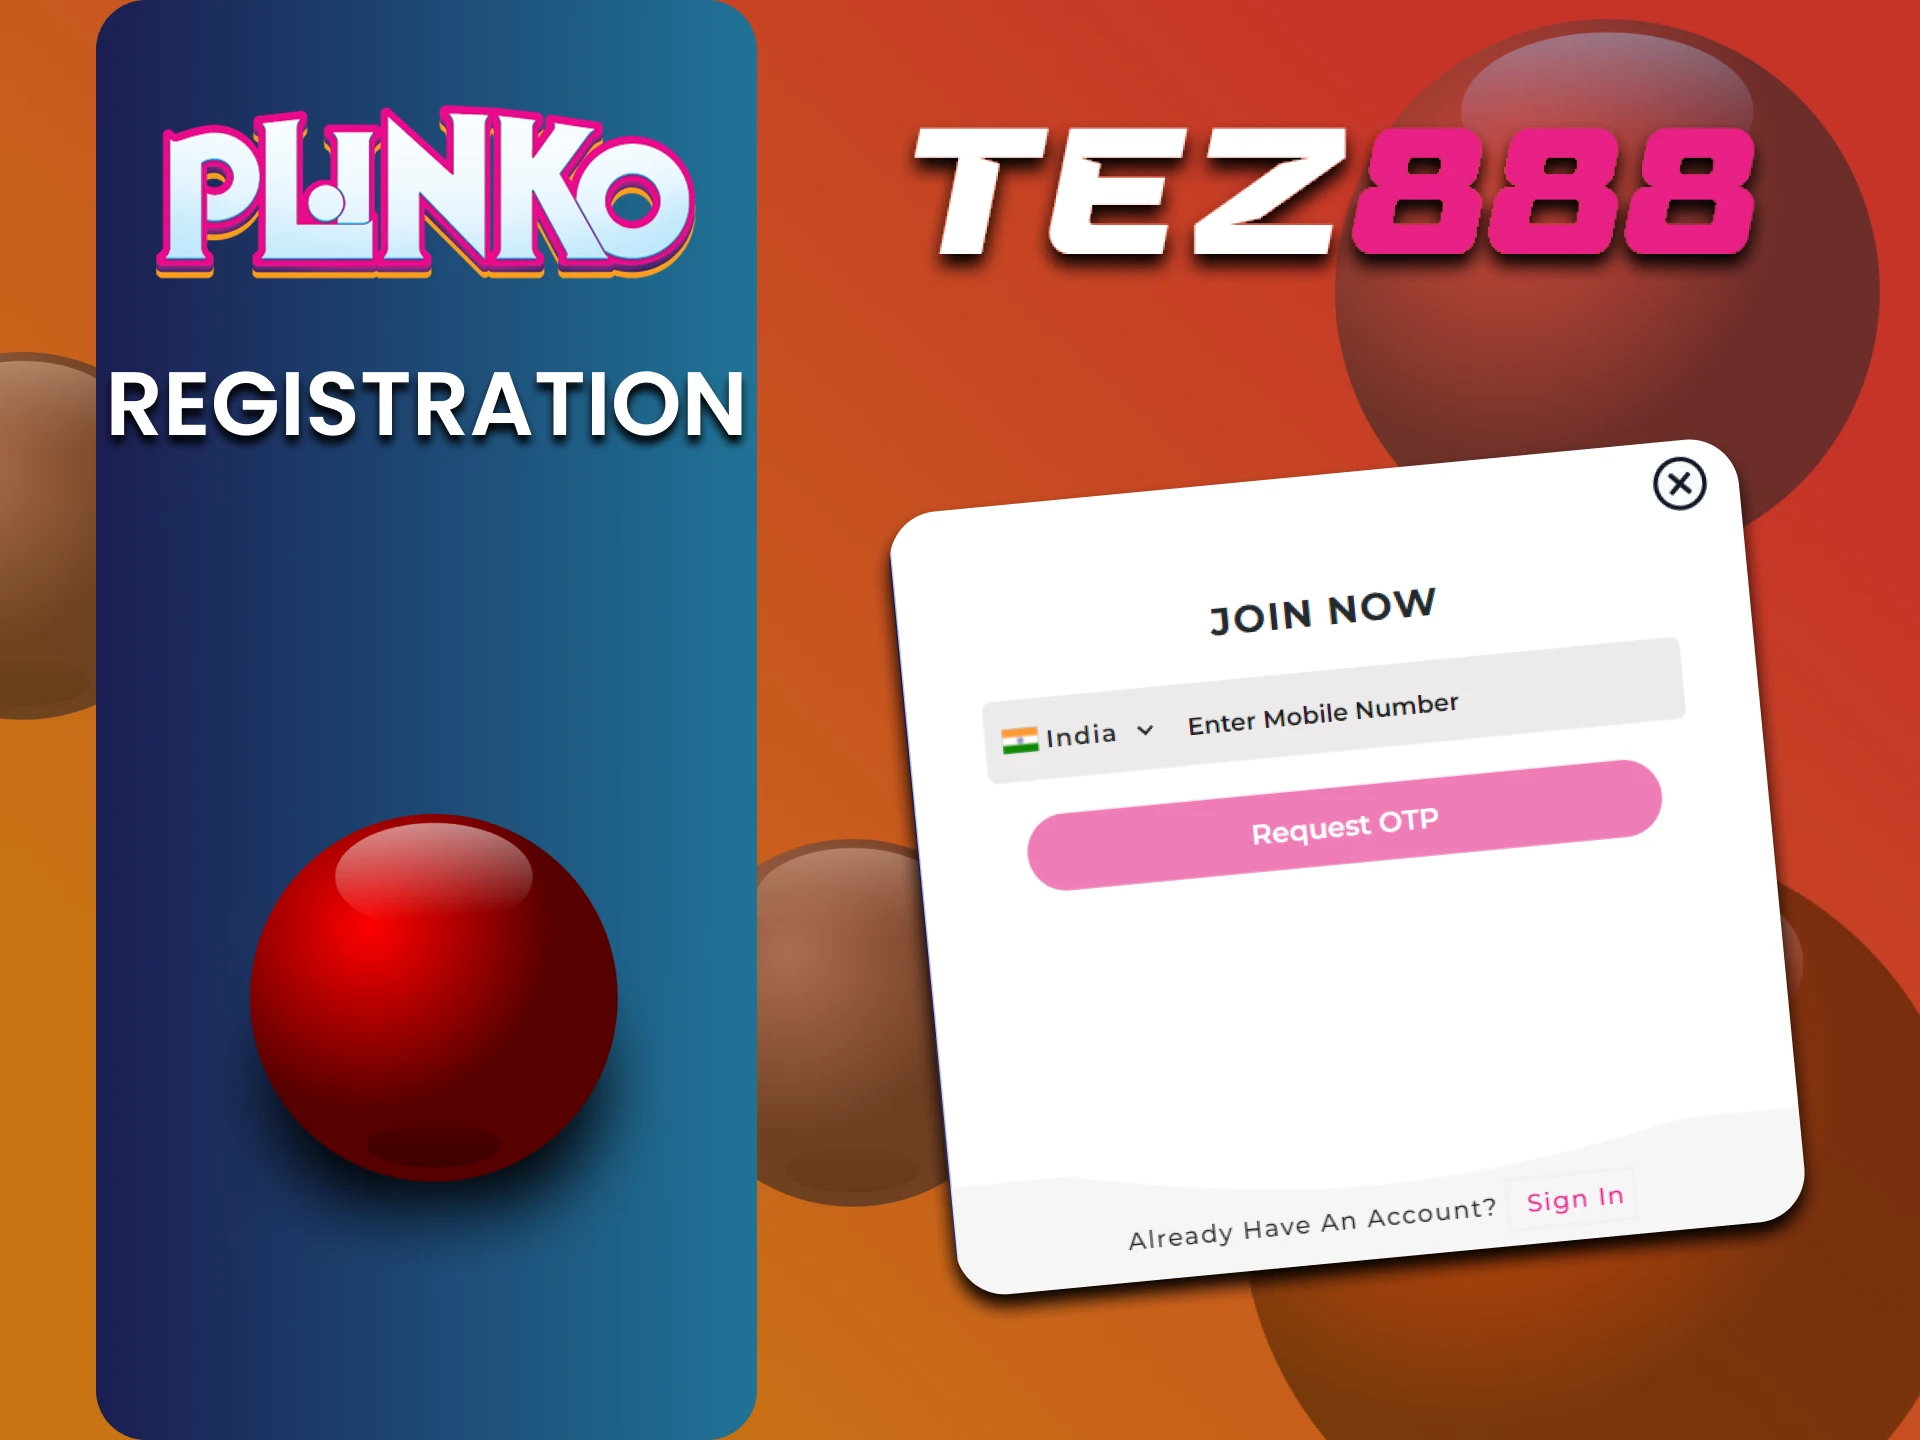 Go through the registration process on Tez888 to play Plinko.